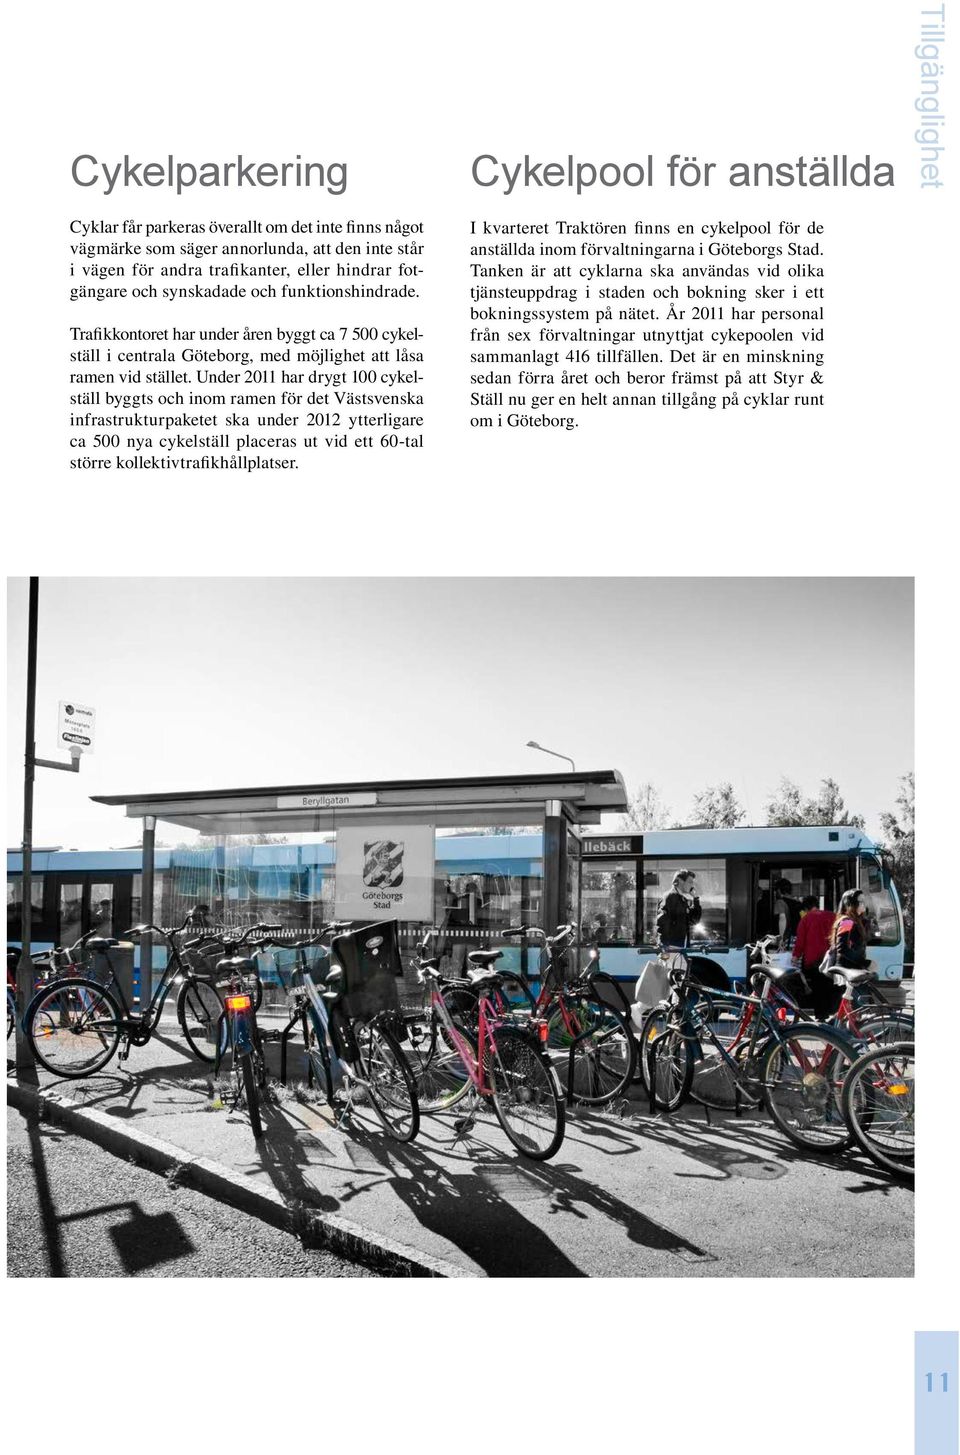 Under 2011 har drygt 100 cykelställ byggts och inom ramen för det Västsvenska infrastrukturpaketet ska under 2012 ytterligare ca 500 nya cykelställ placeras ut vid ett 60-tal större